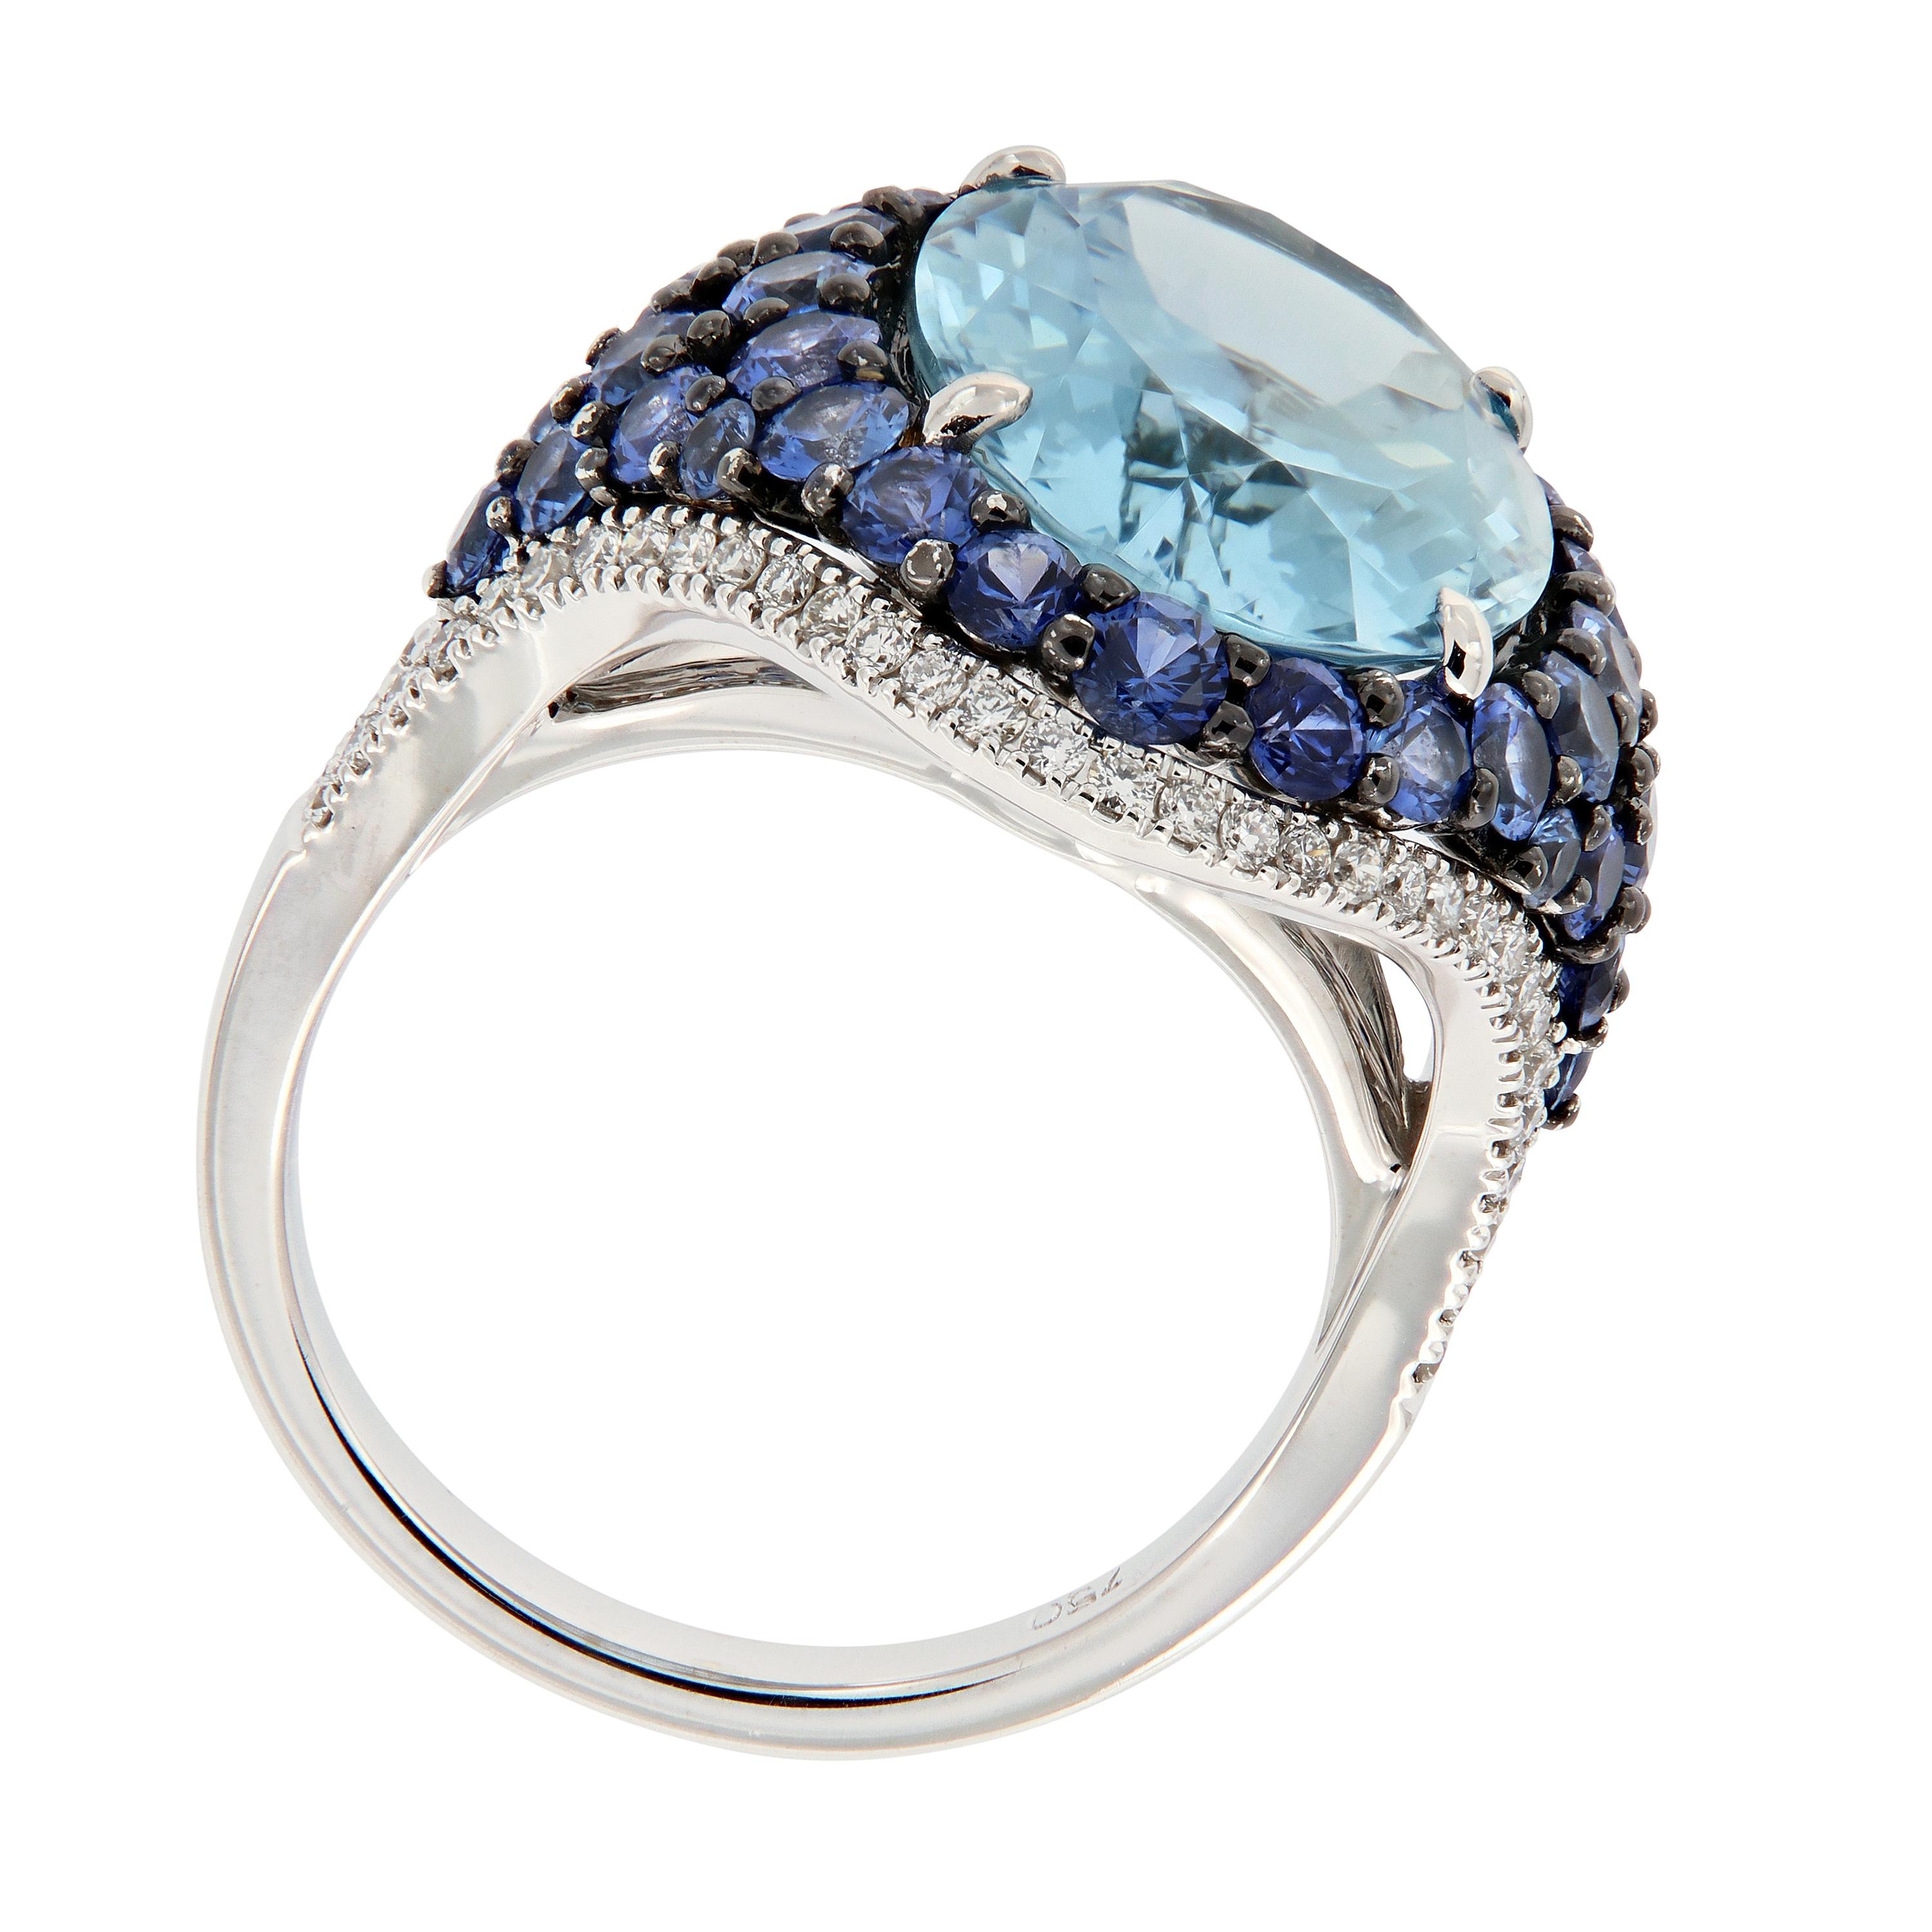 Dieser atemberaubende Cocktailring ist eine wunderschöne Kombination aus verschiedenen Blautönen! Im Mittelpunkt des Rings steht ein ovaler Aquamarin, der mit blauen Saphiren und Diamanten besetzt ist. Wiegt 9,9 Gramm. Ringgröße 6,25.

Aquamarin